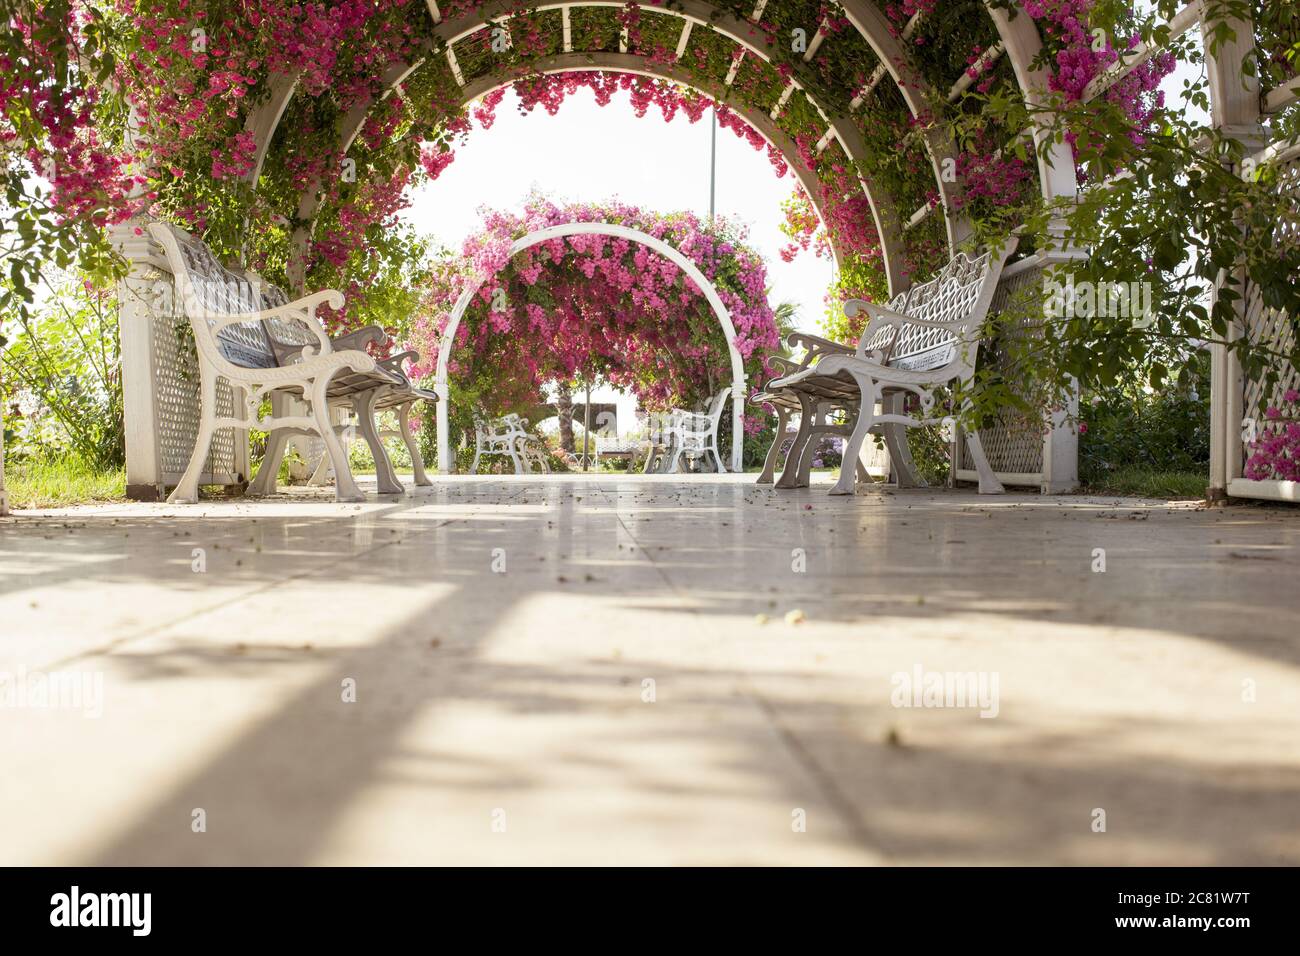 Basso angolo di ripresa di un bellissimo vialetto con panchine bianche sotto un arco di rose Foto Stock